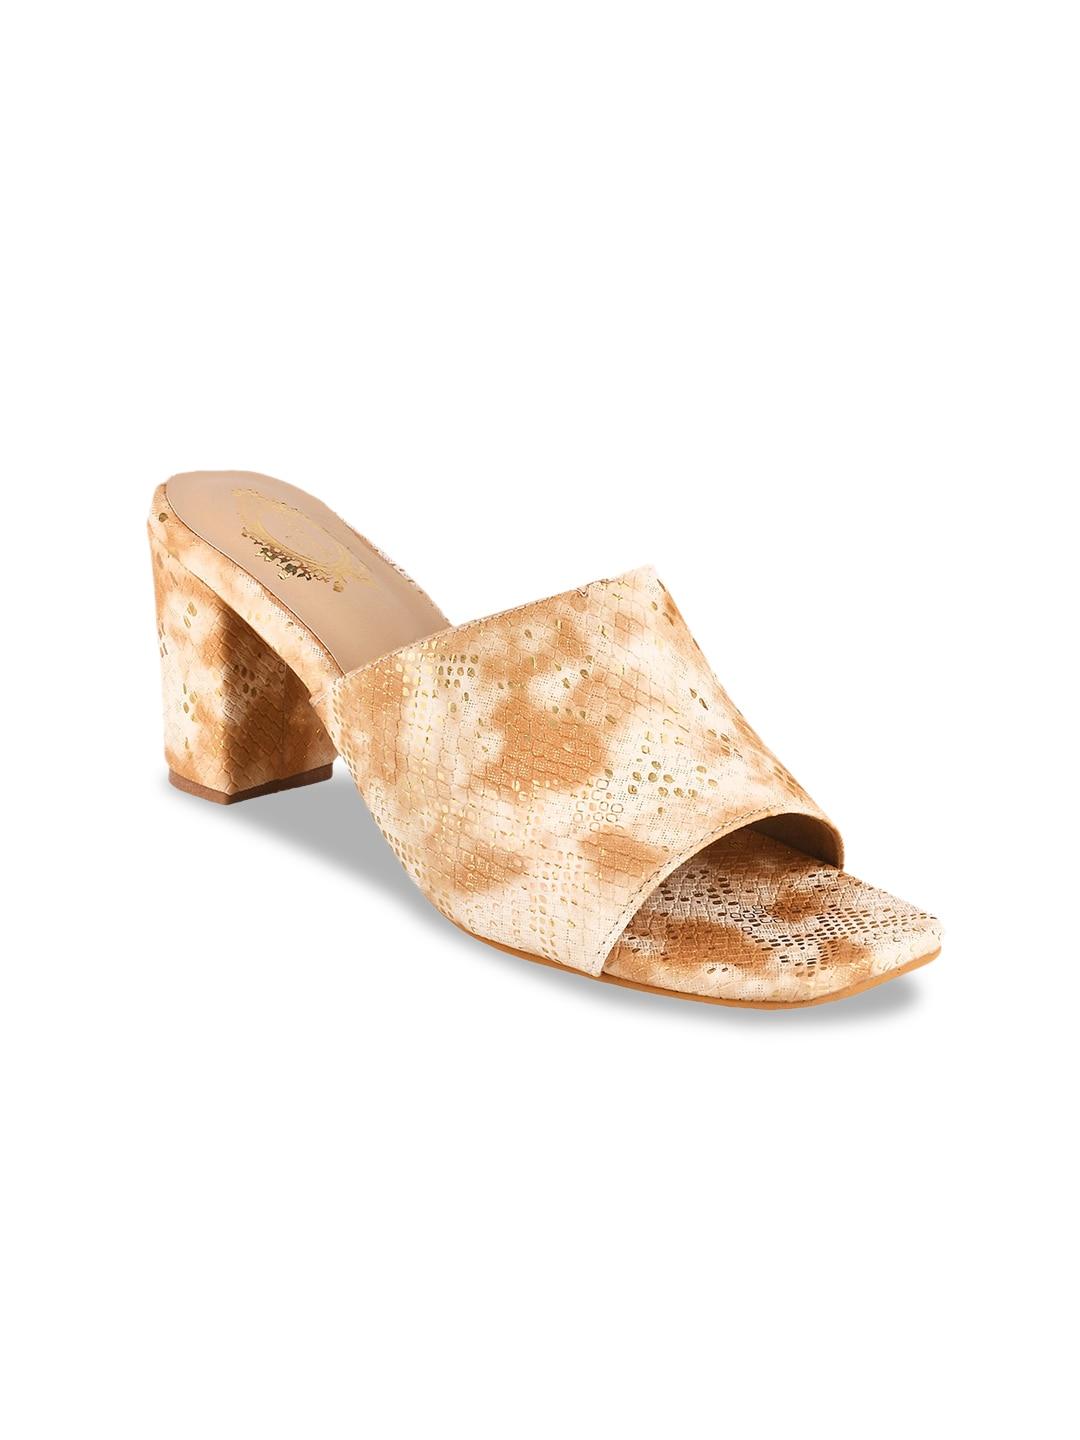 shoetopia-textured-open-toe-block-heels